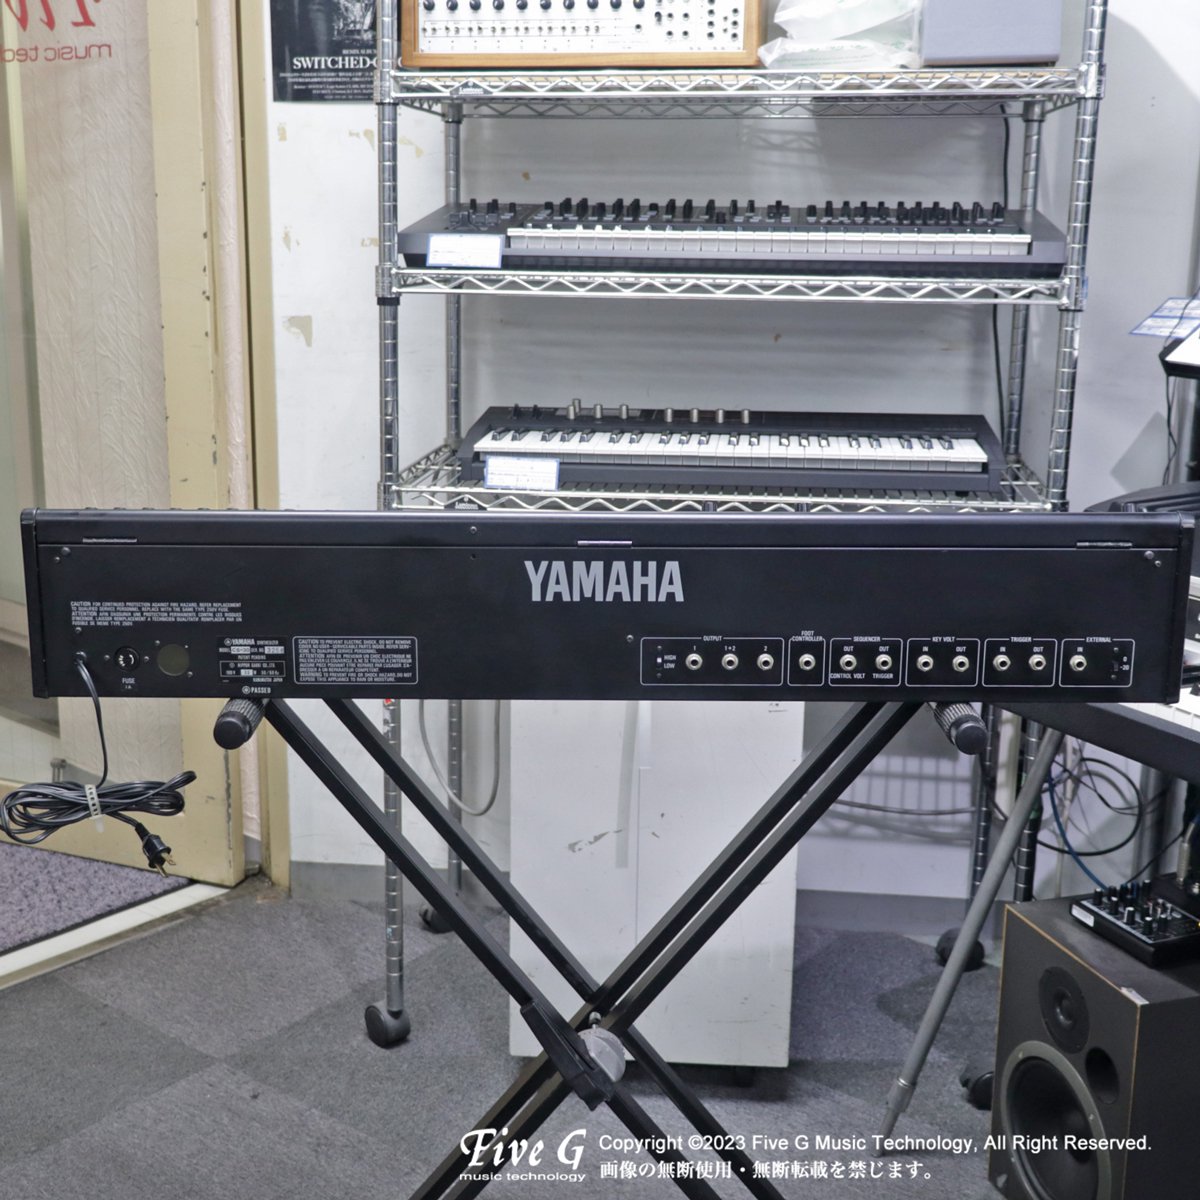 YAMAHA | CS-30 | 中古 - Used - シンセサイザー キーボード | Five G 